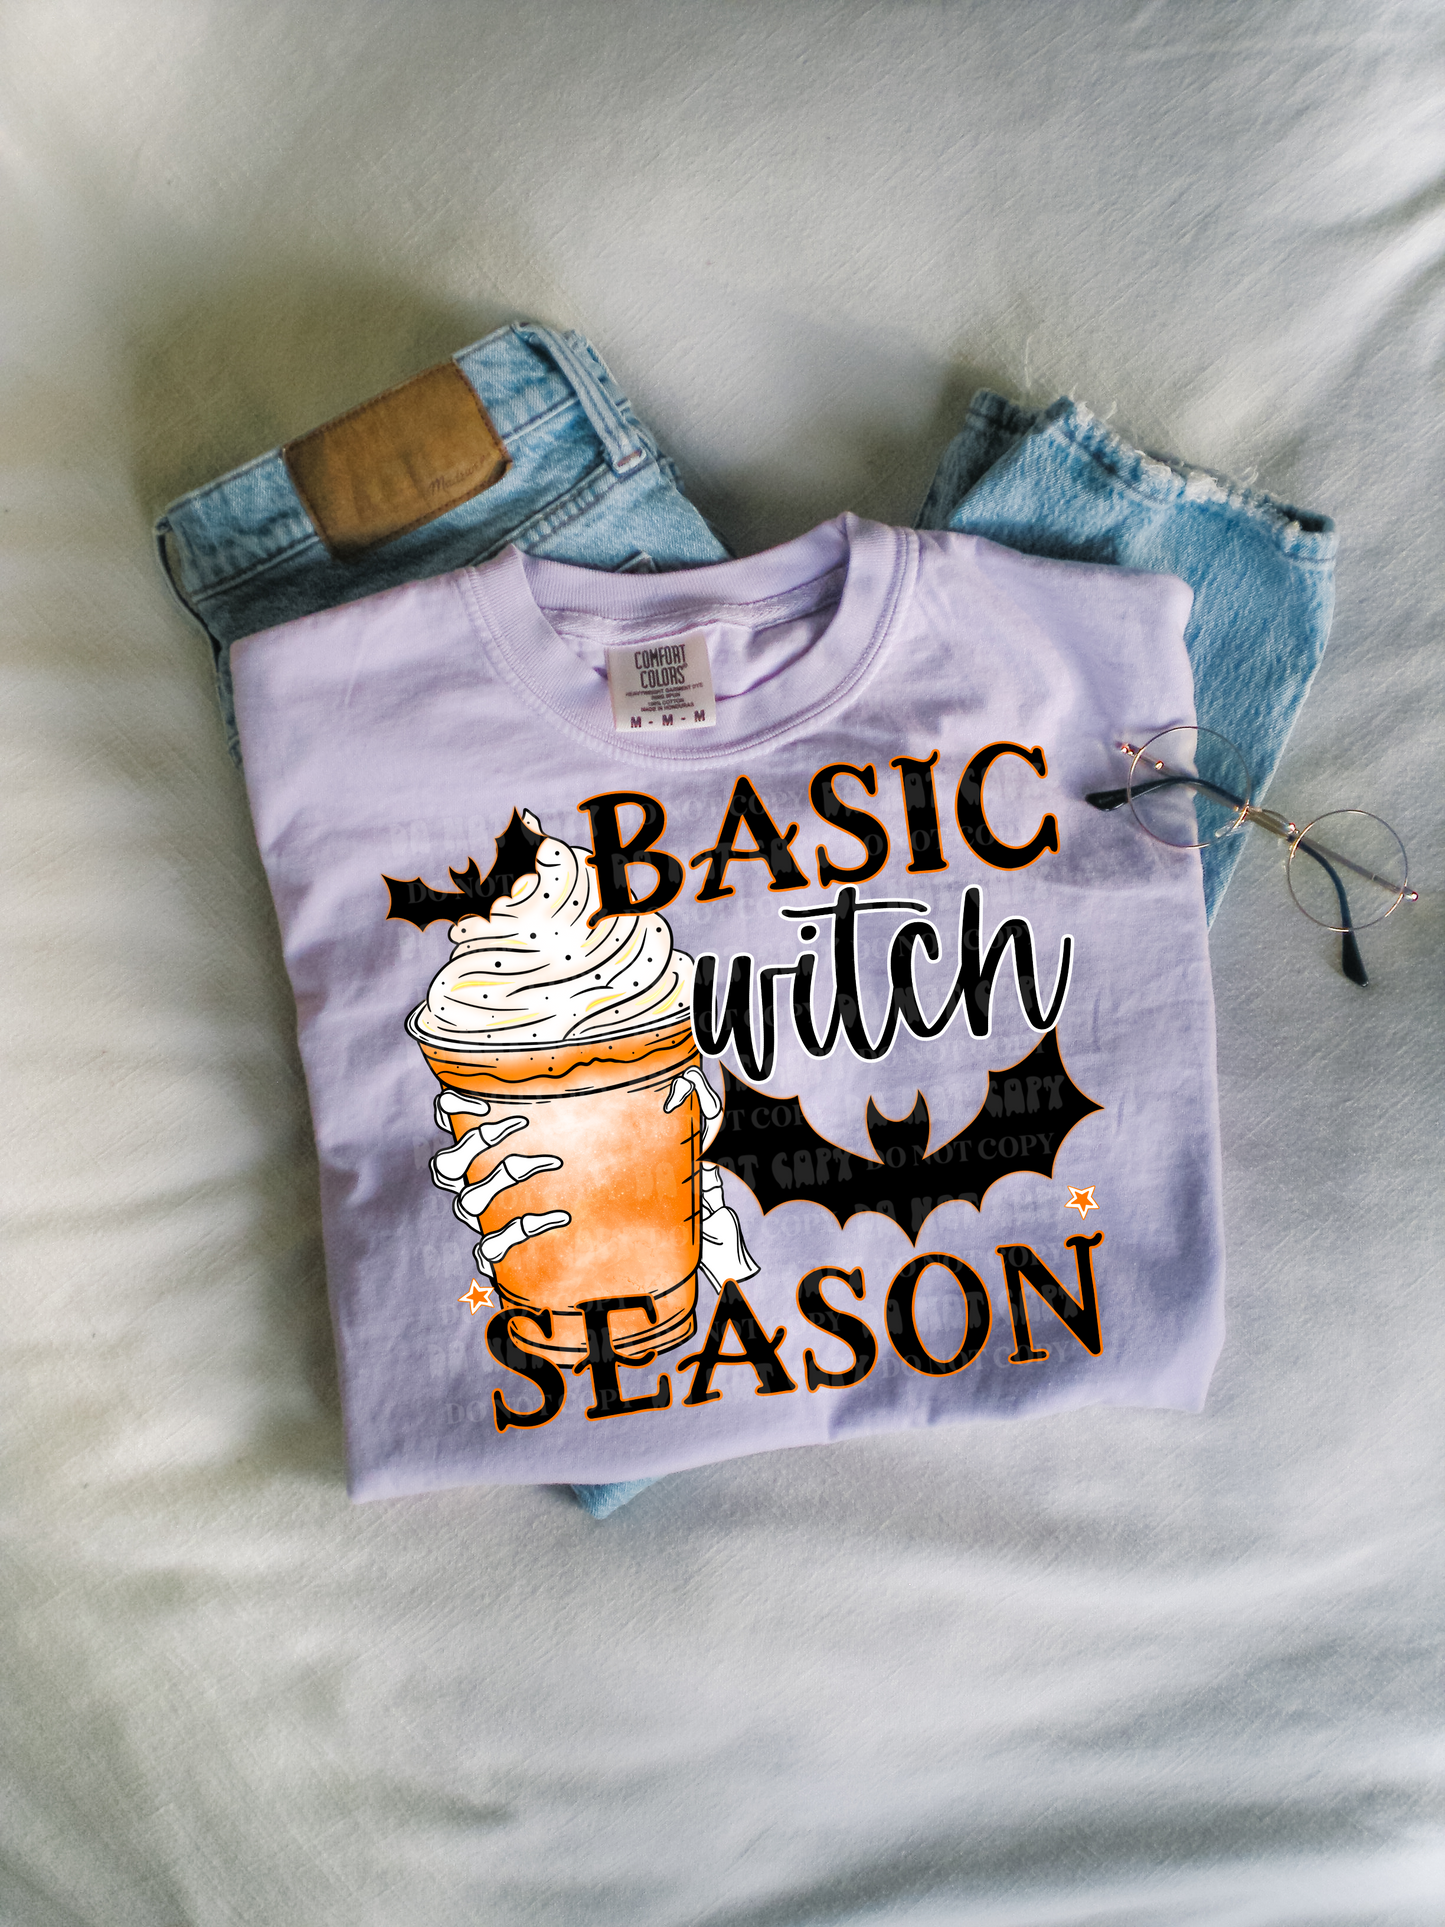 Basic witch season